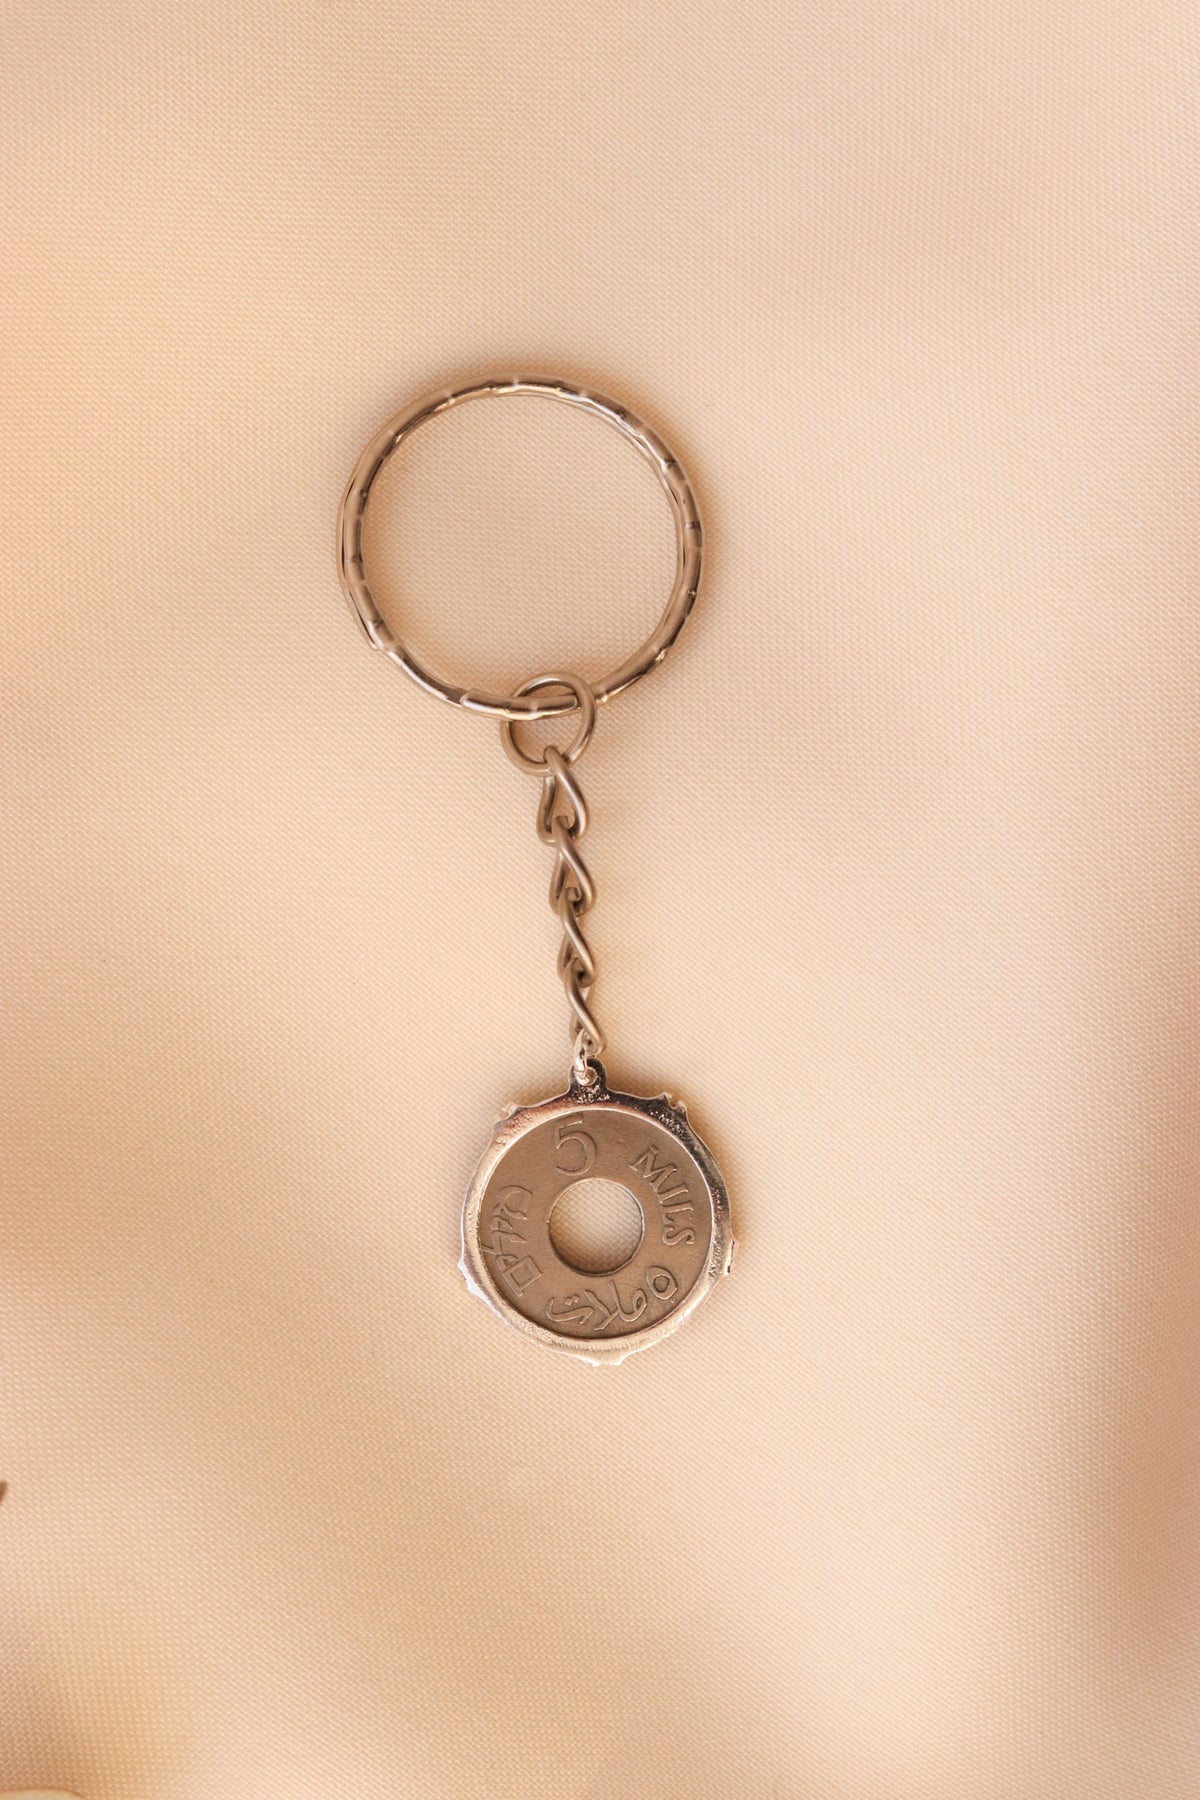 ميدالية مفاتيح العملة الفلسطينية ٥مل مع ايطار تاجي